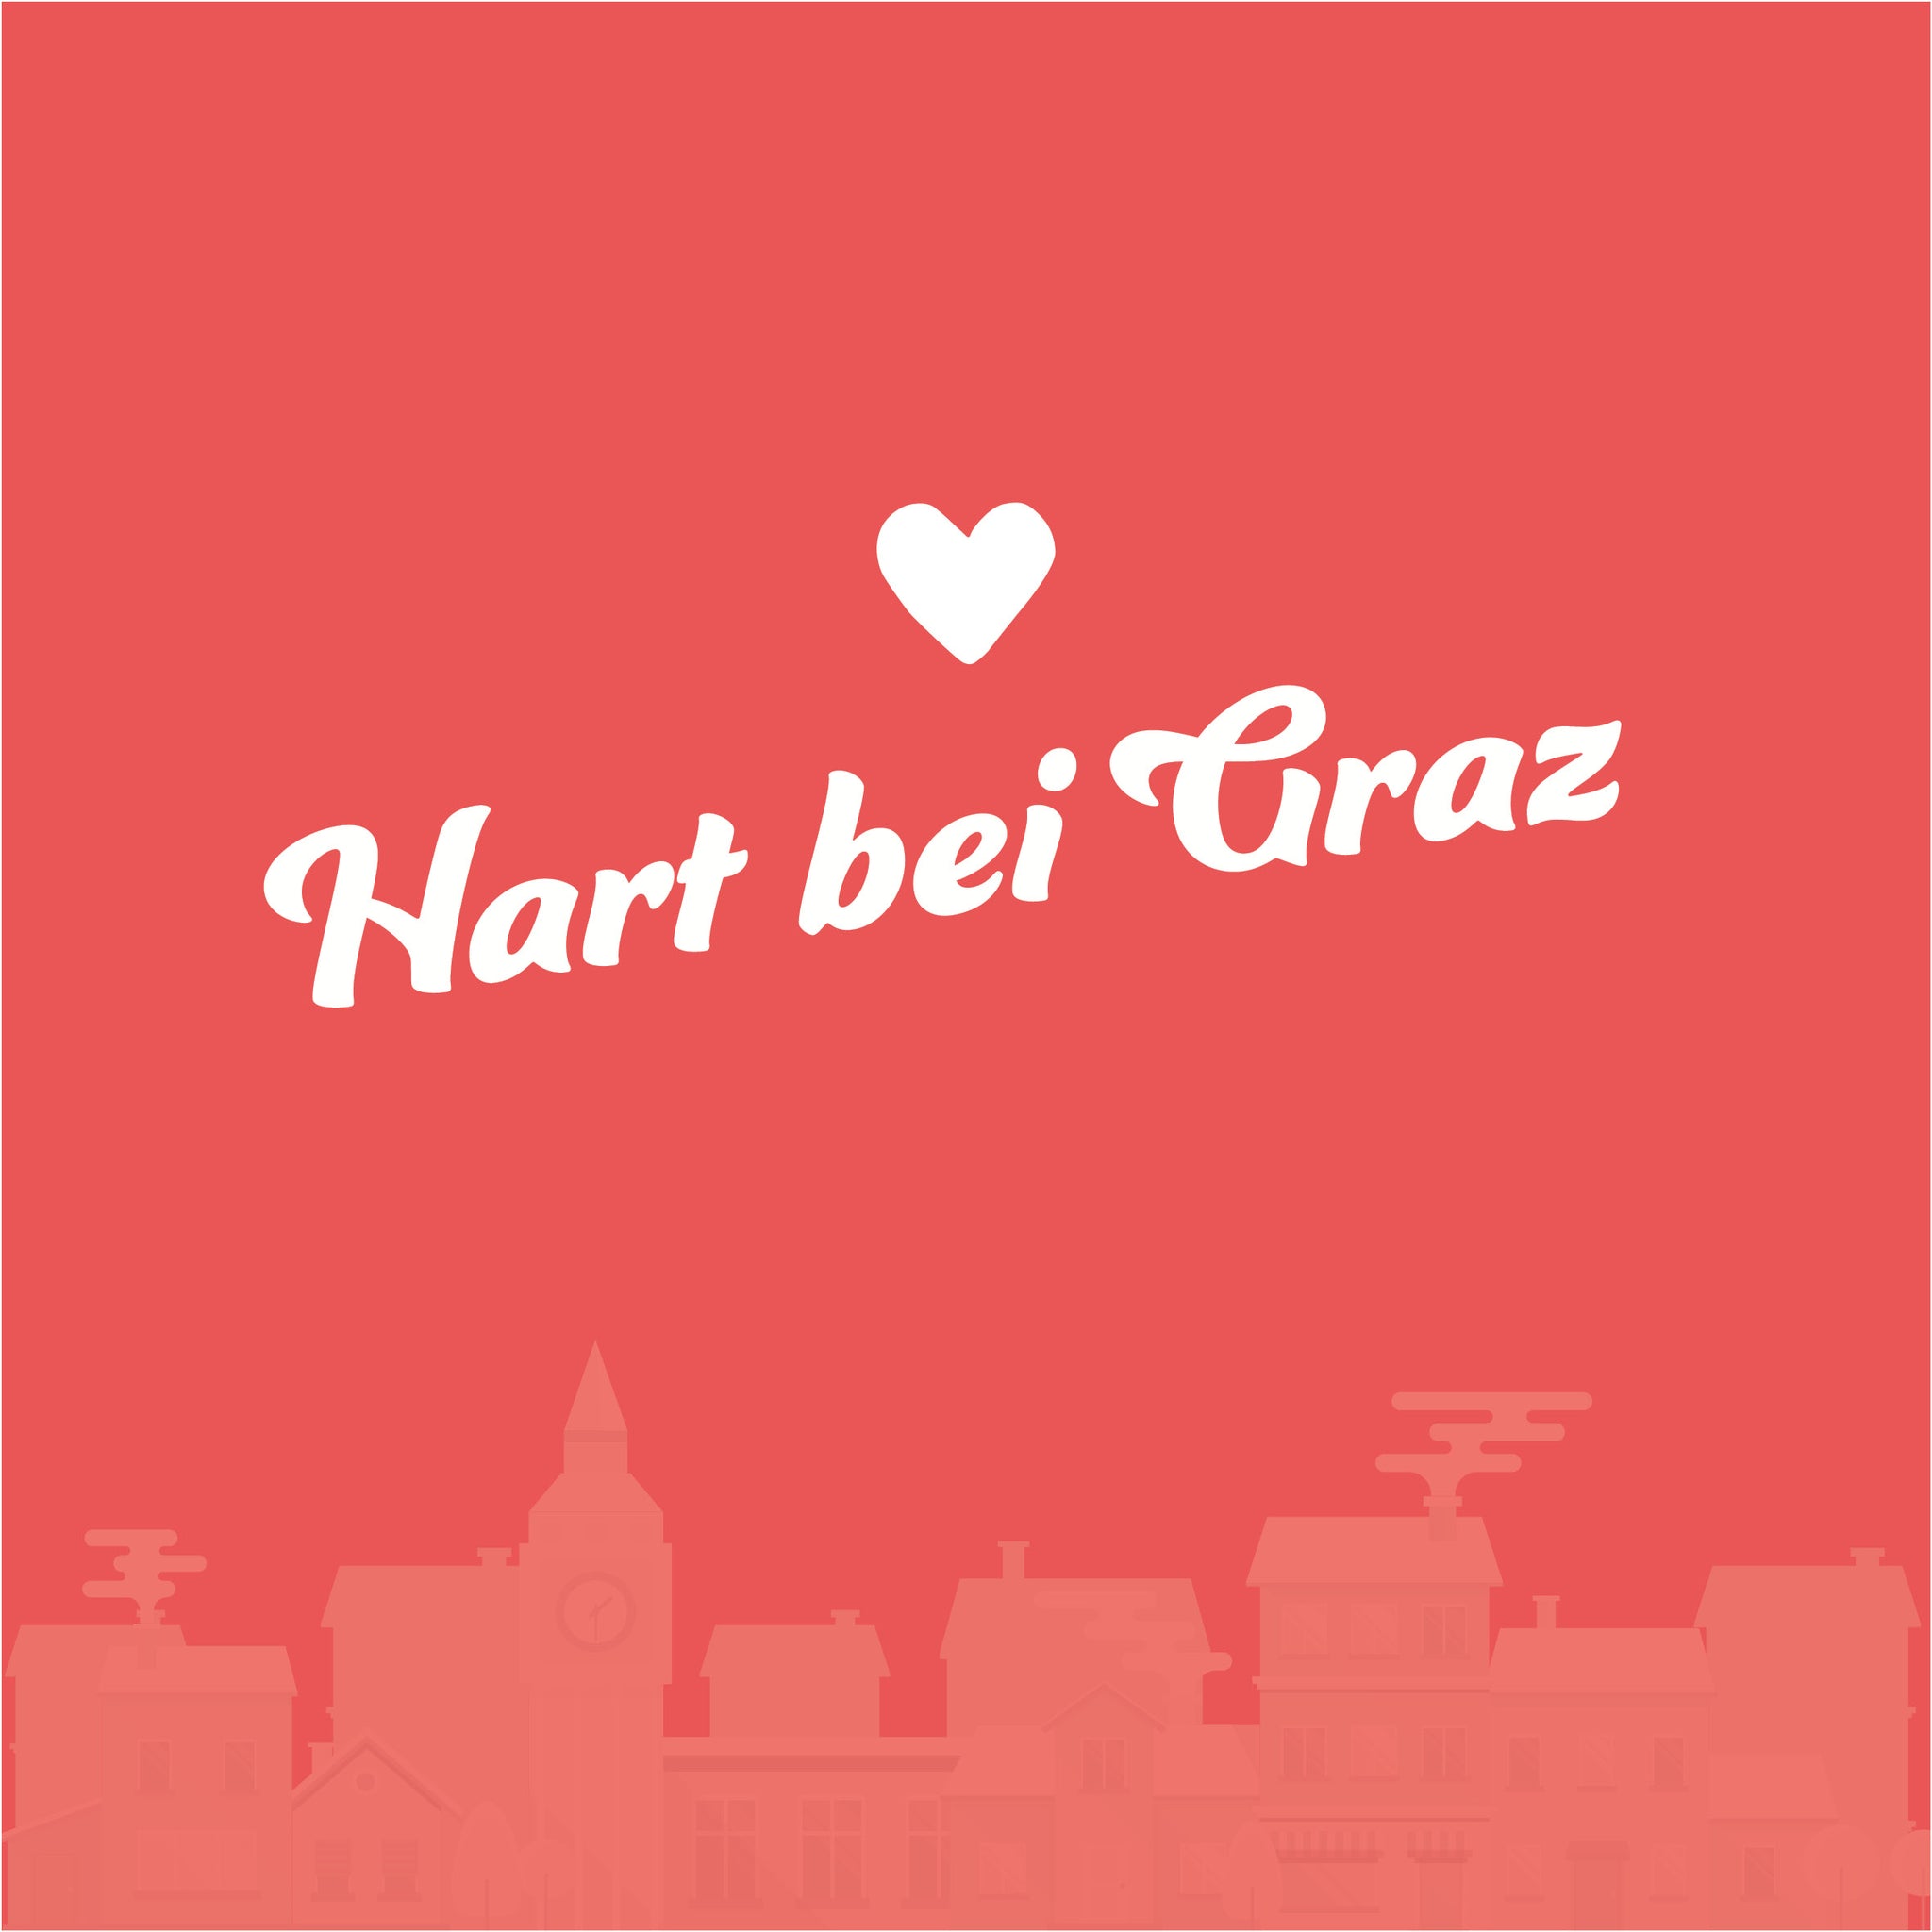 Hart bei Graz